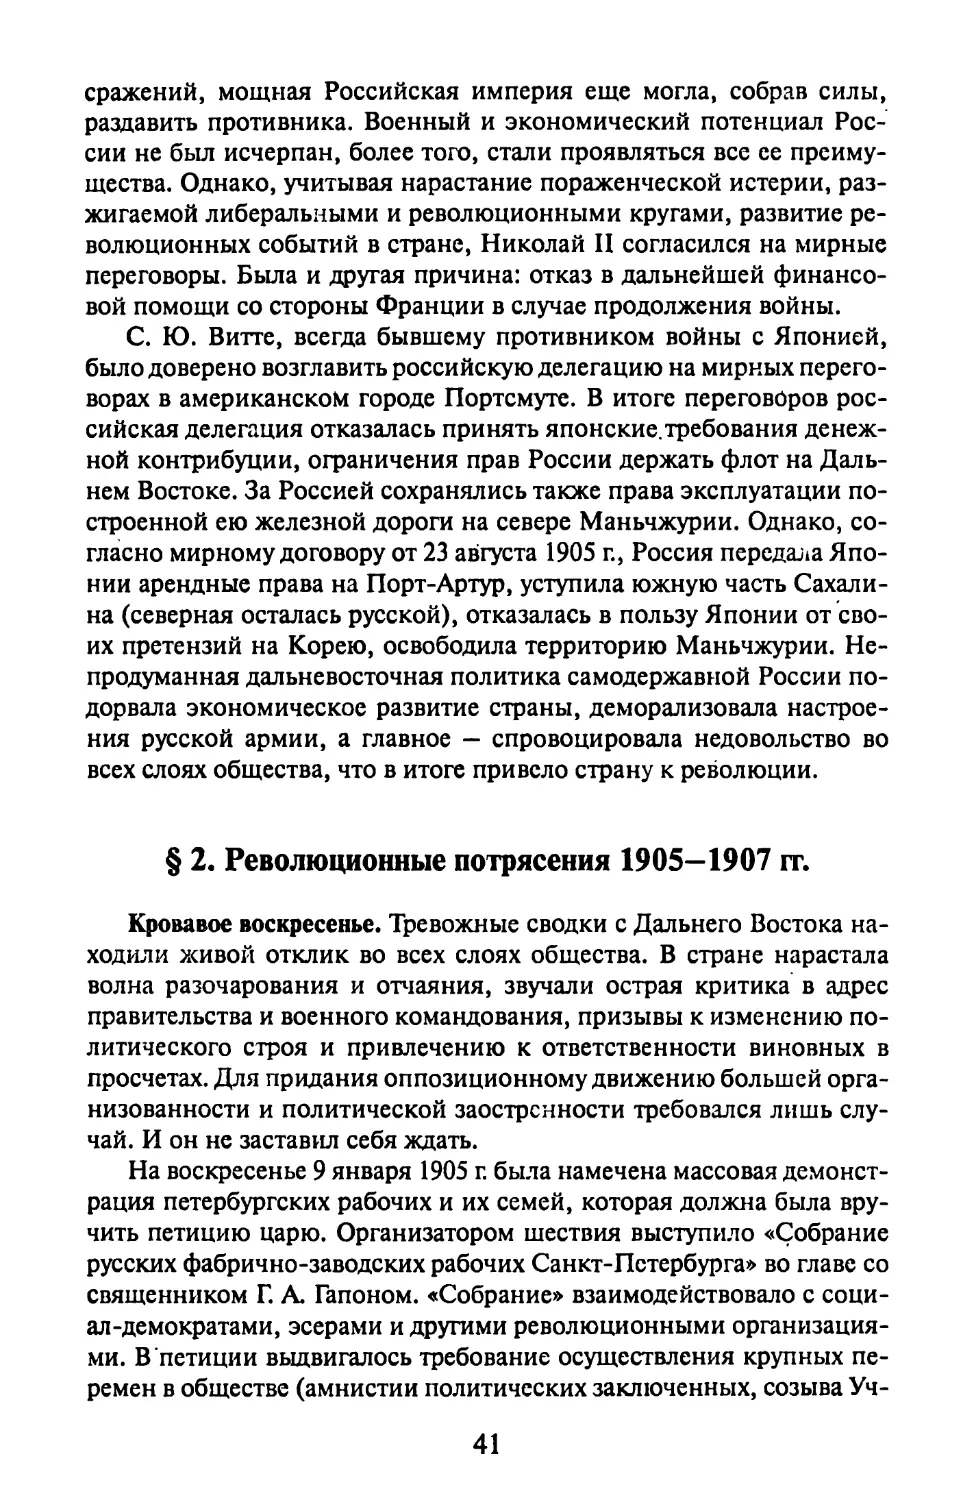 § 2. Революционные потрясения 1905—1907 гг.